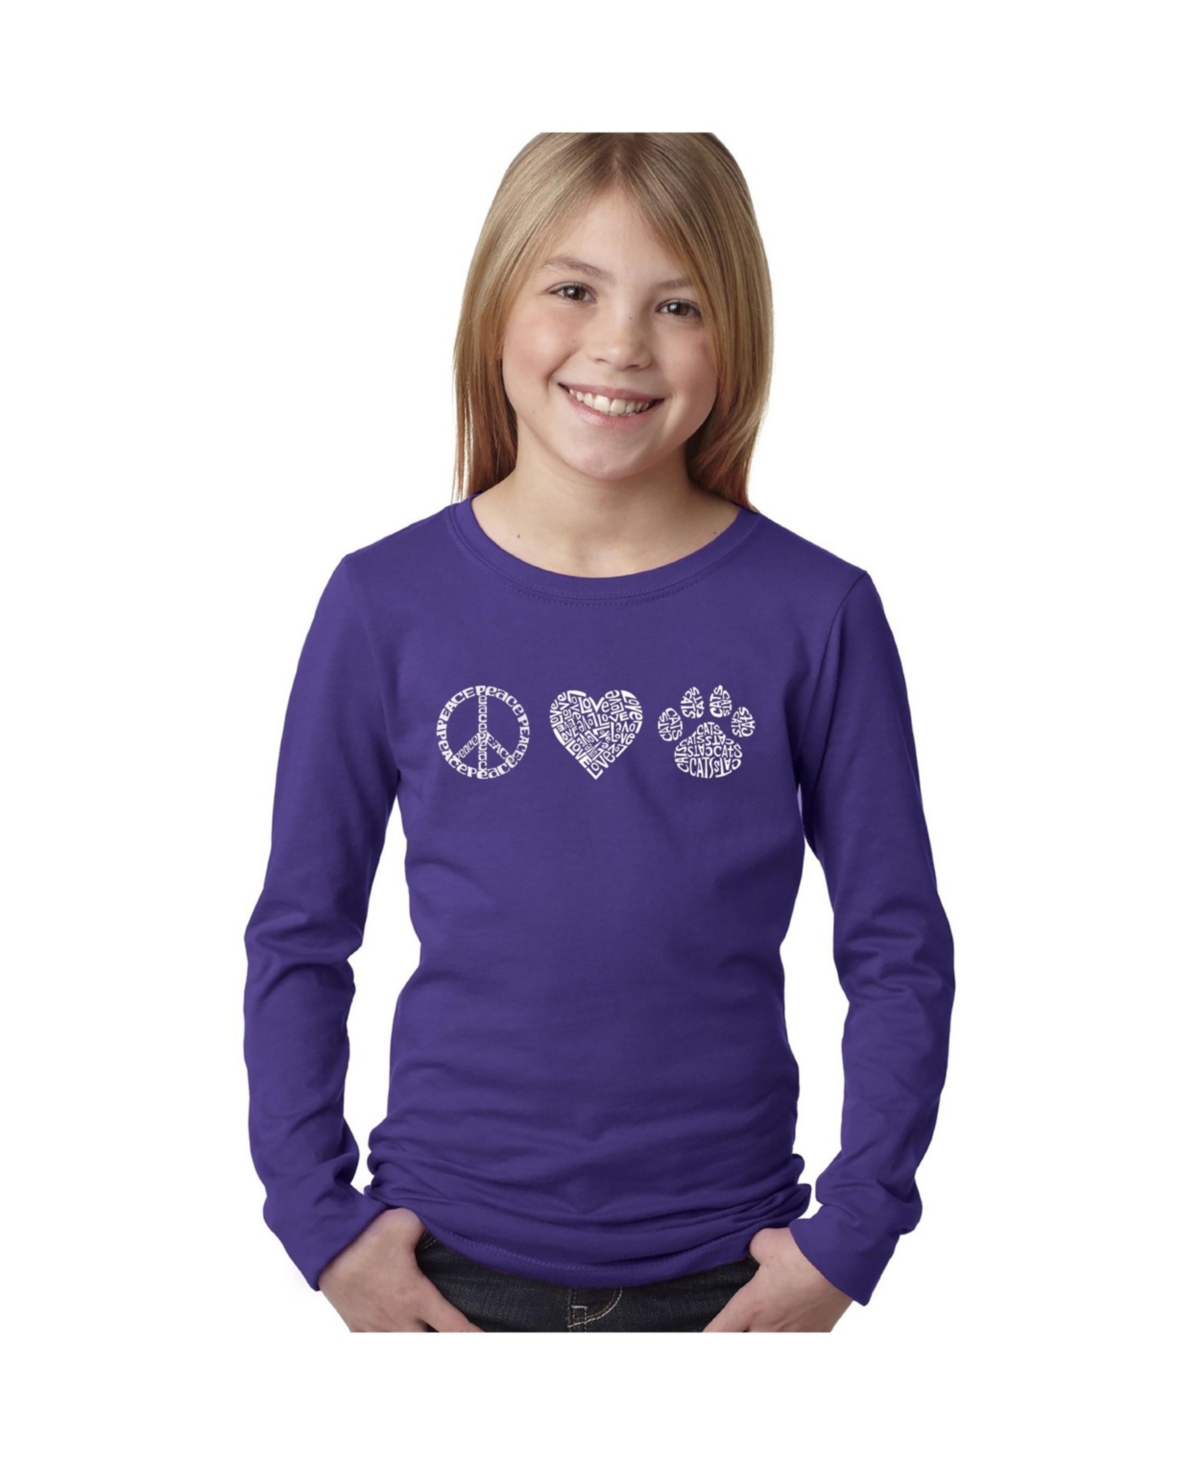 La Pop Art Big Girl's Word Art Long Sleeve T-shirt In Purple